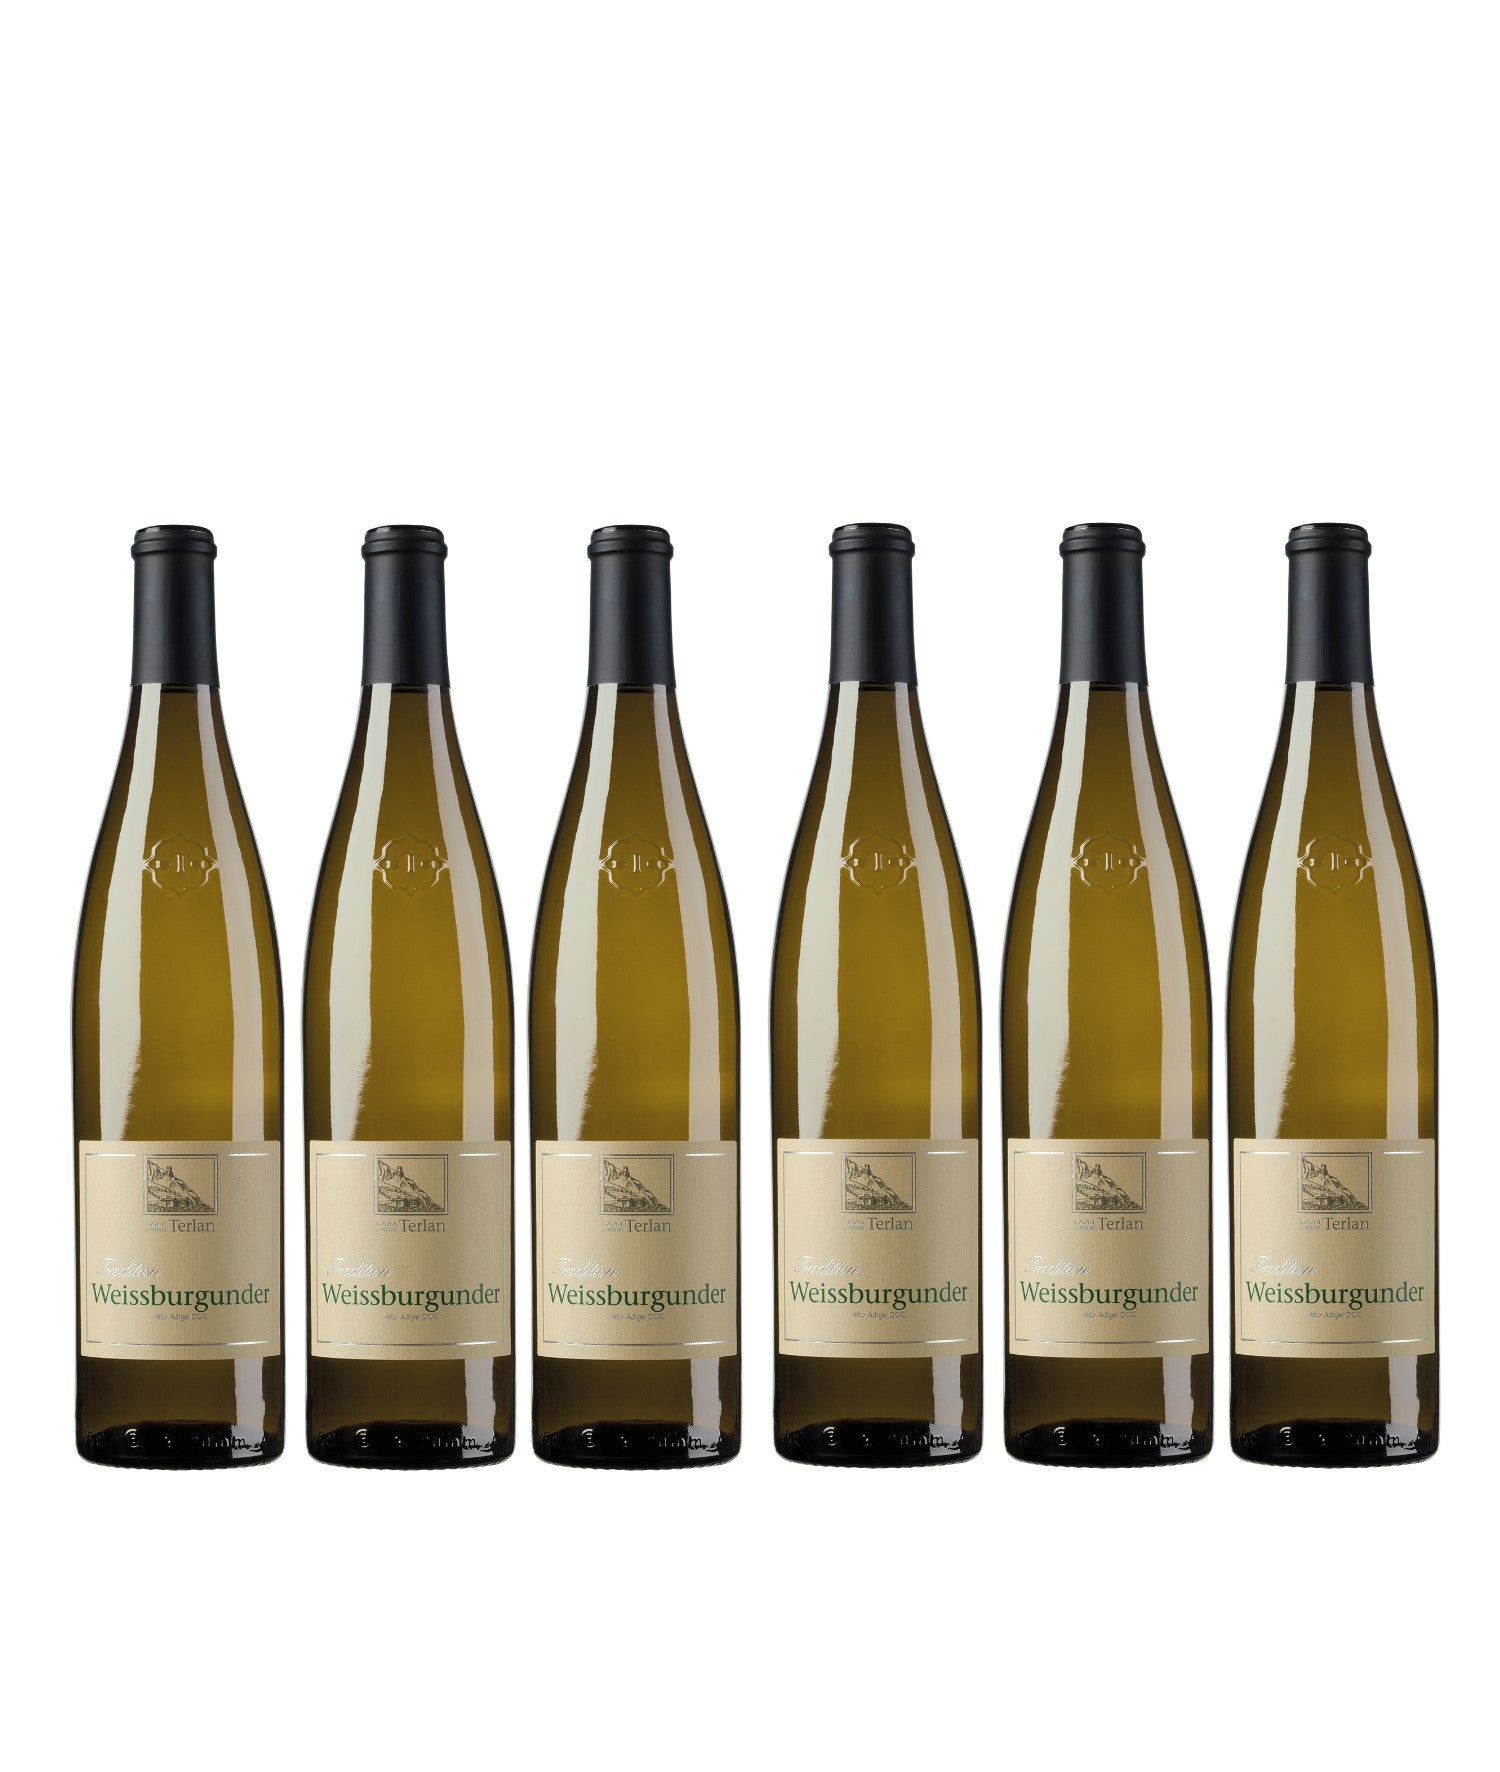 Cantina Terlan Weißburgunder DOC Alto Adige Weißwein trocken Italien (6 x 0.75l) - Versanel -